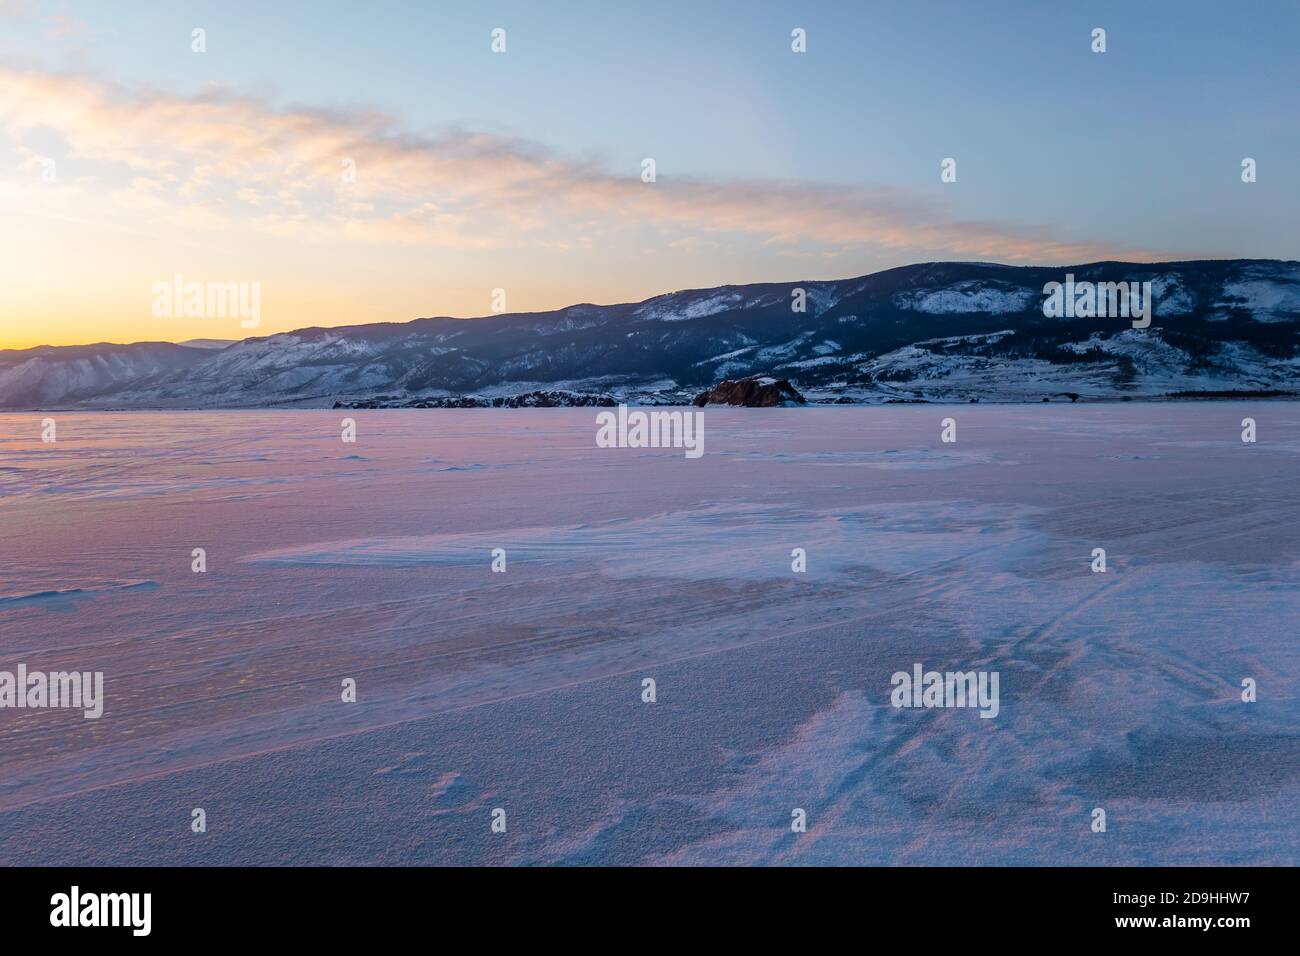 Fantastico tramonto in inverno sul ghiaccio del Lago Baikal, Siberia Russia. Paesaggio naturale della stagione invernale. La bellezza e la grandezza della natura. Foto Stock